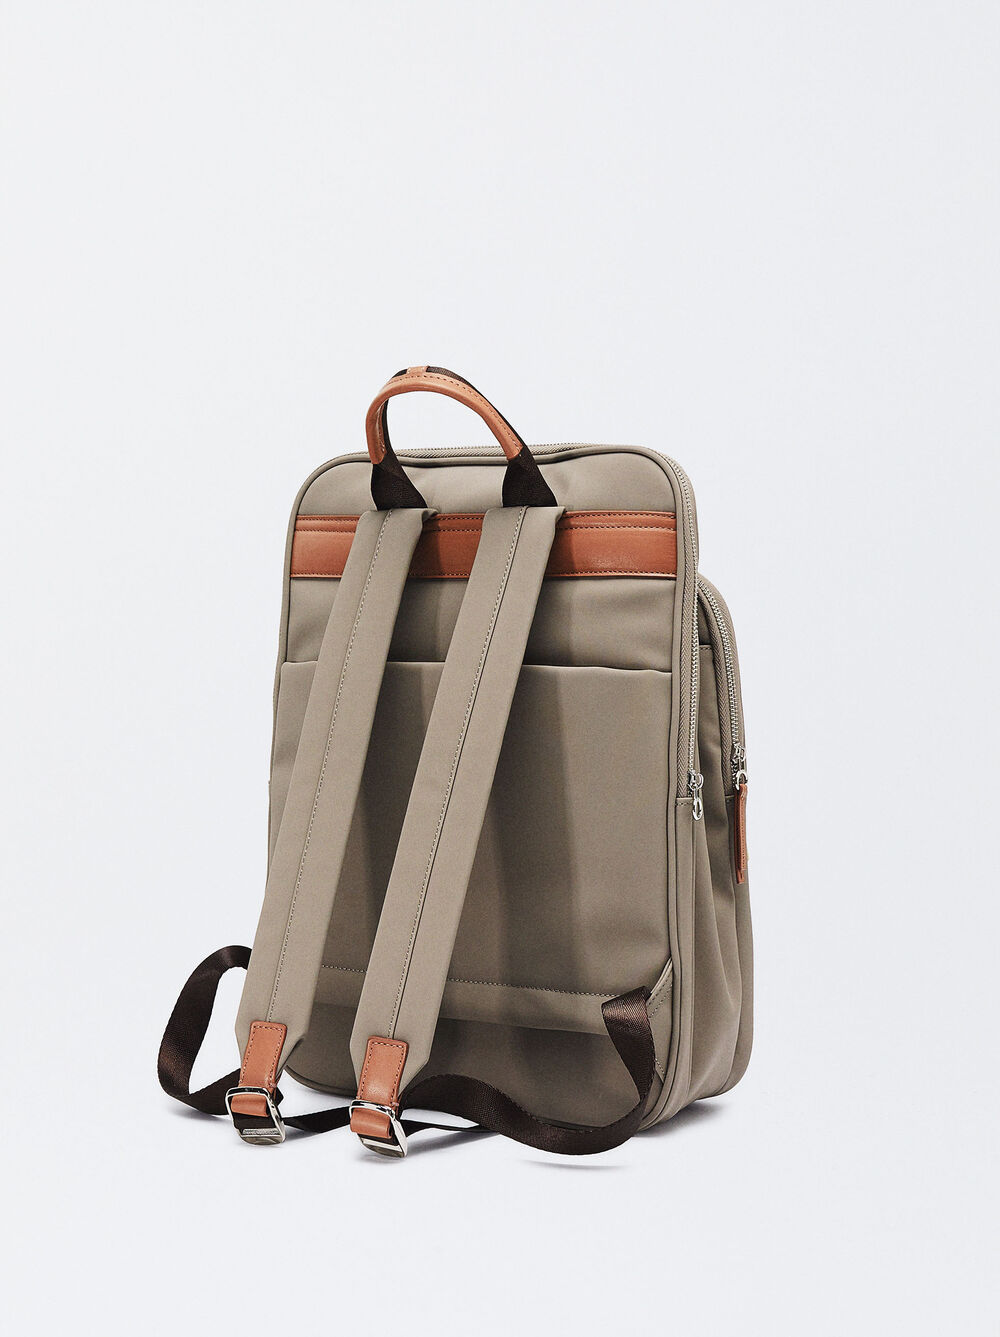 Nylon-Effect Backpack For 15” Laptop